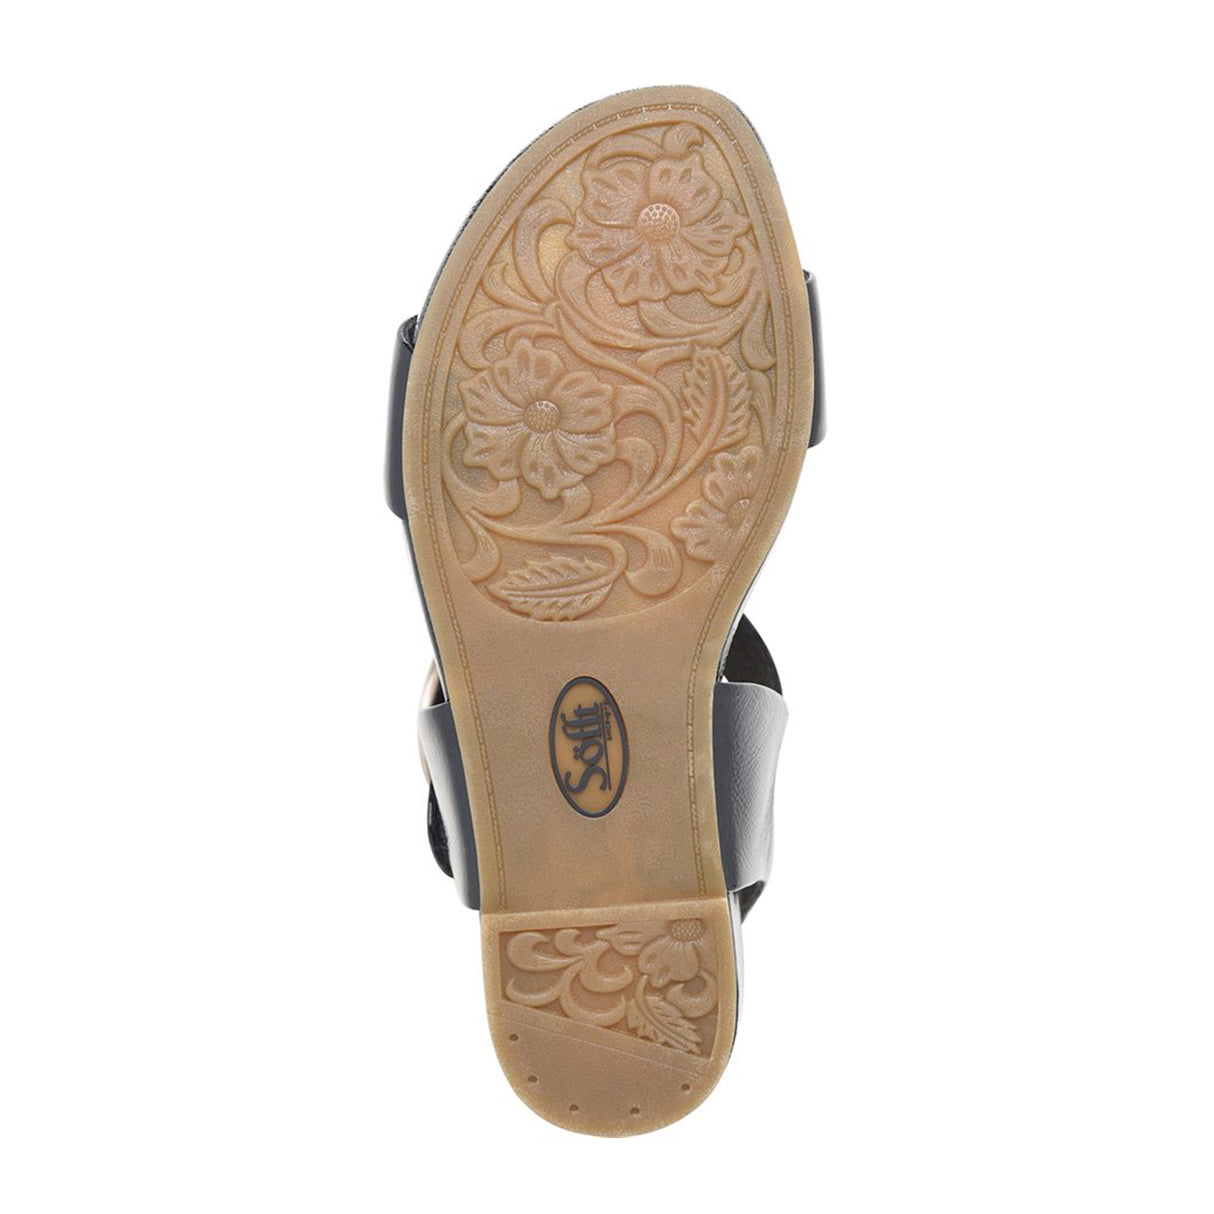 Sofft Vaya Wedge Sandal (Women) - Black Crinkle Patent Sandals - Heel/Wedge - The Heel Shoe Fitters